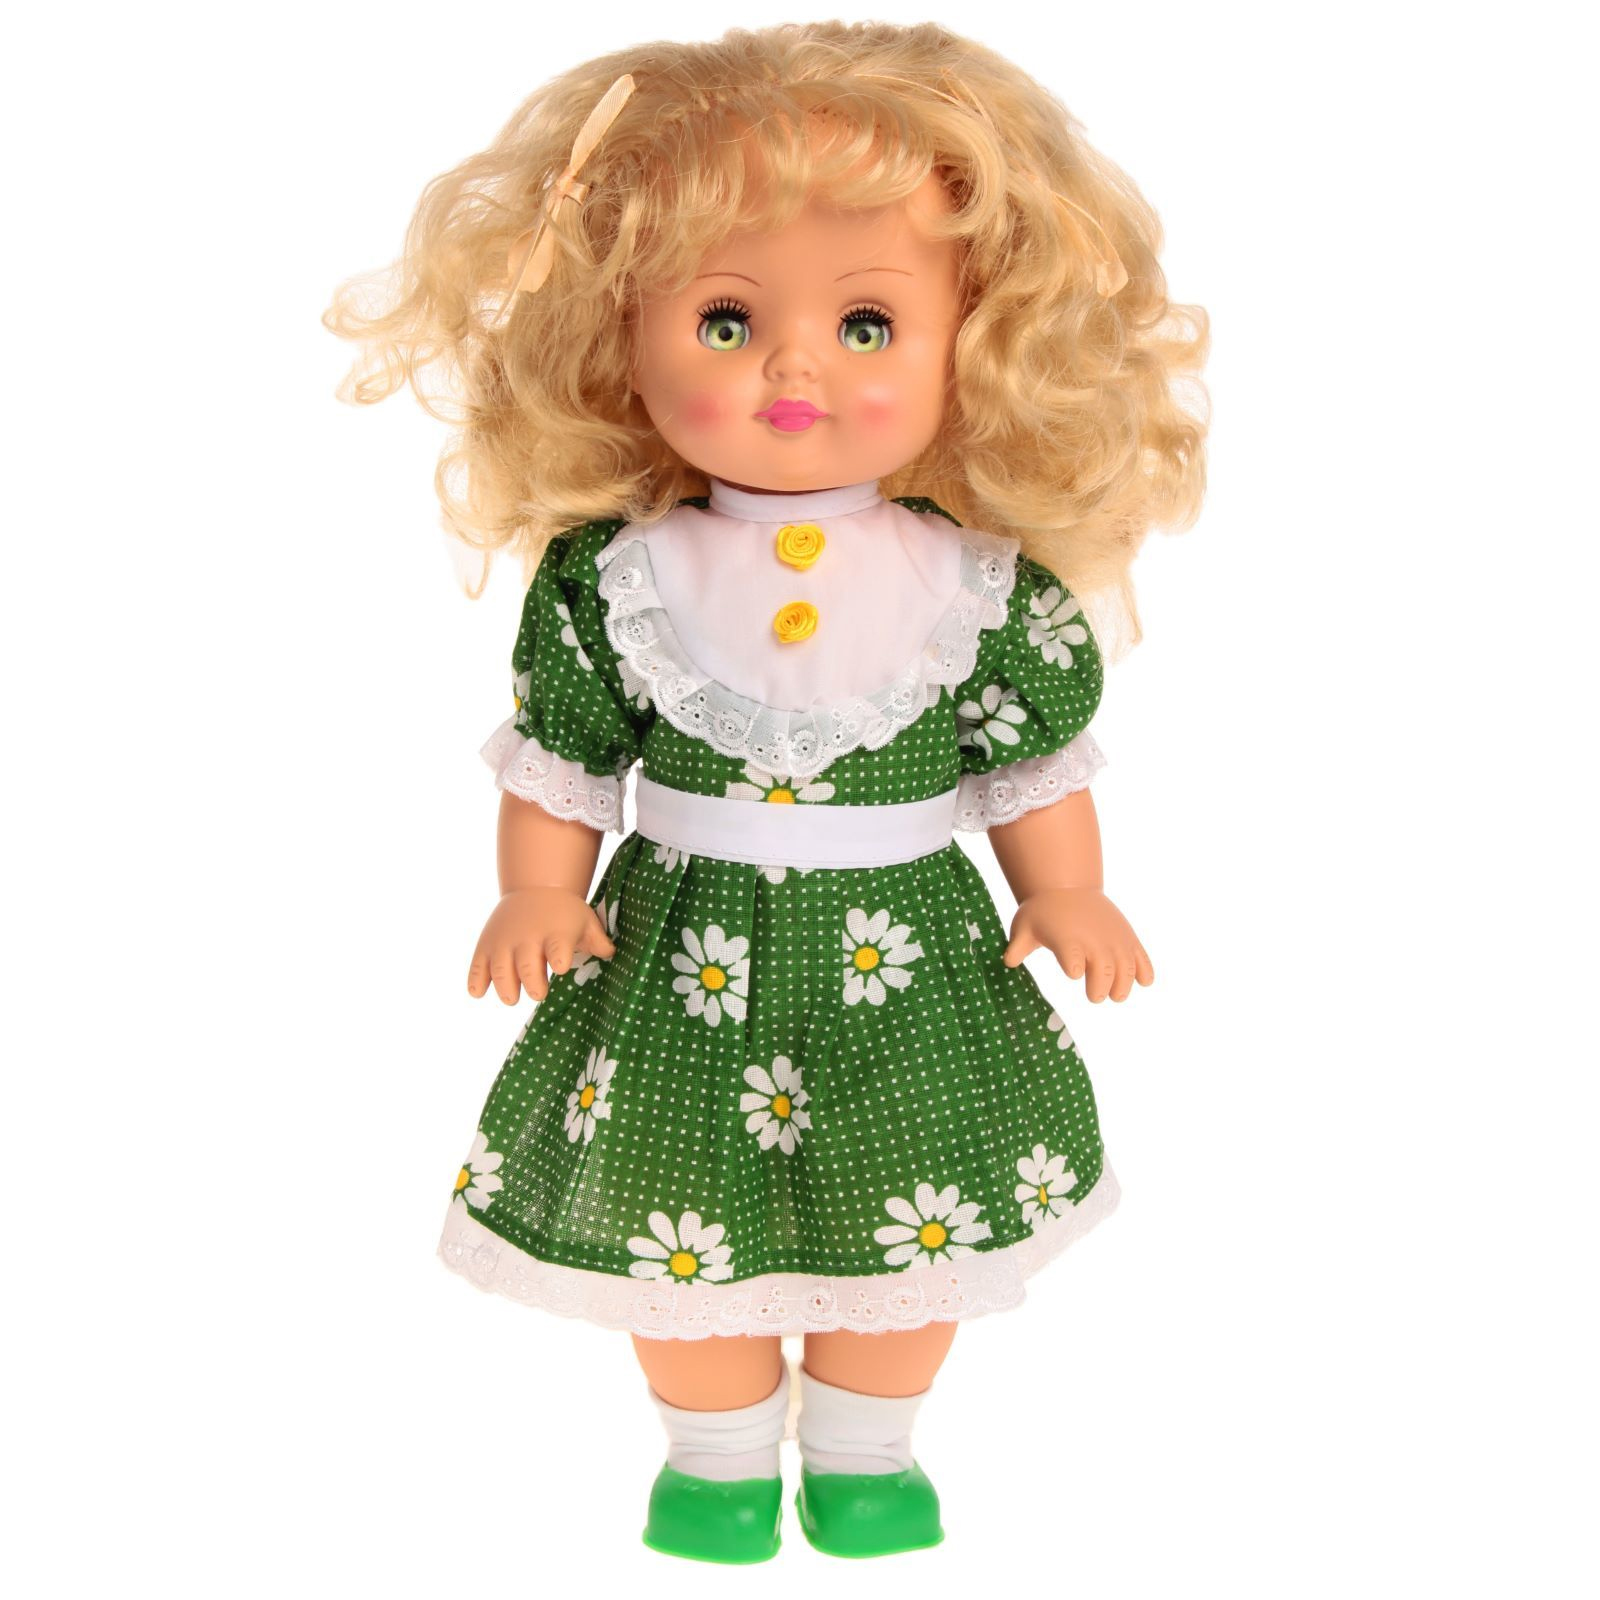 Кукла интернет магазин недорого. Куклы Пензенской фабрики. Куклы Пензенской фабрики игрушек.